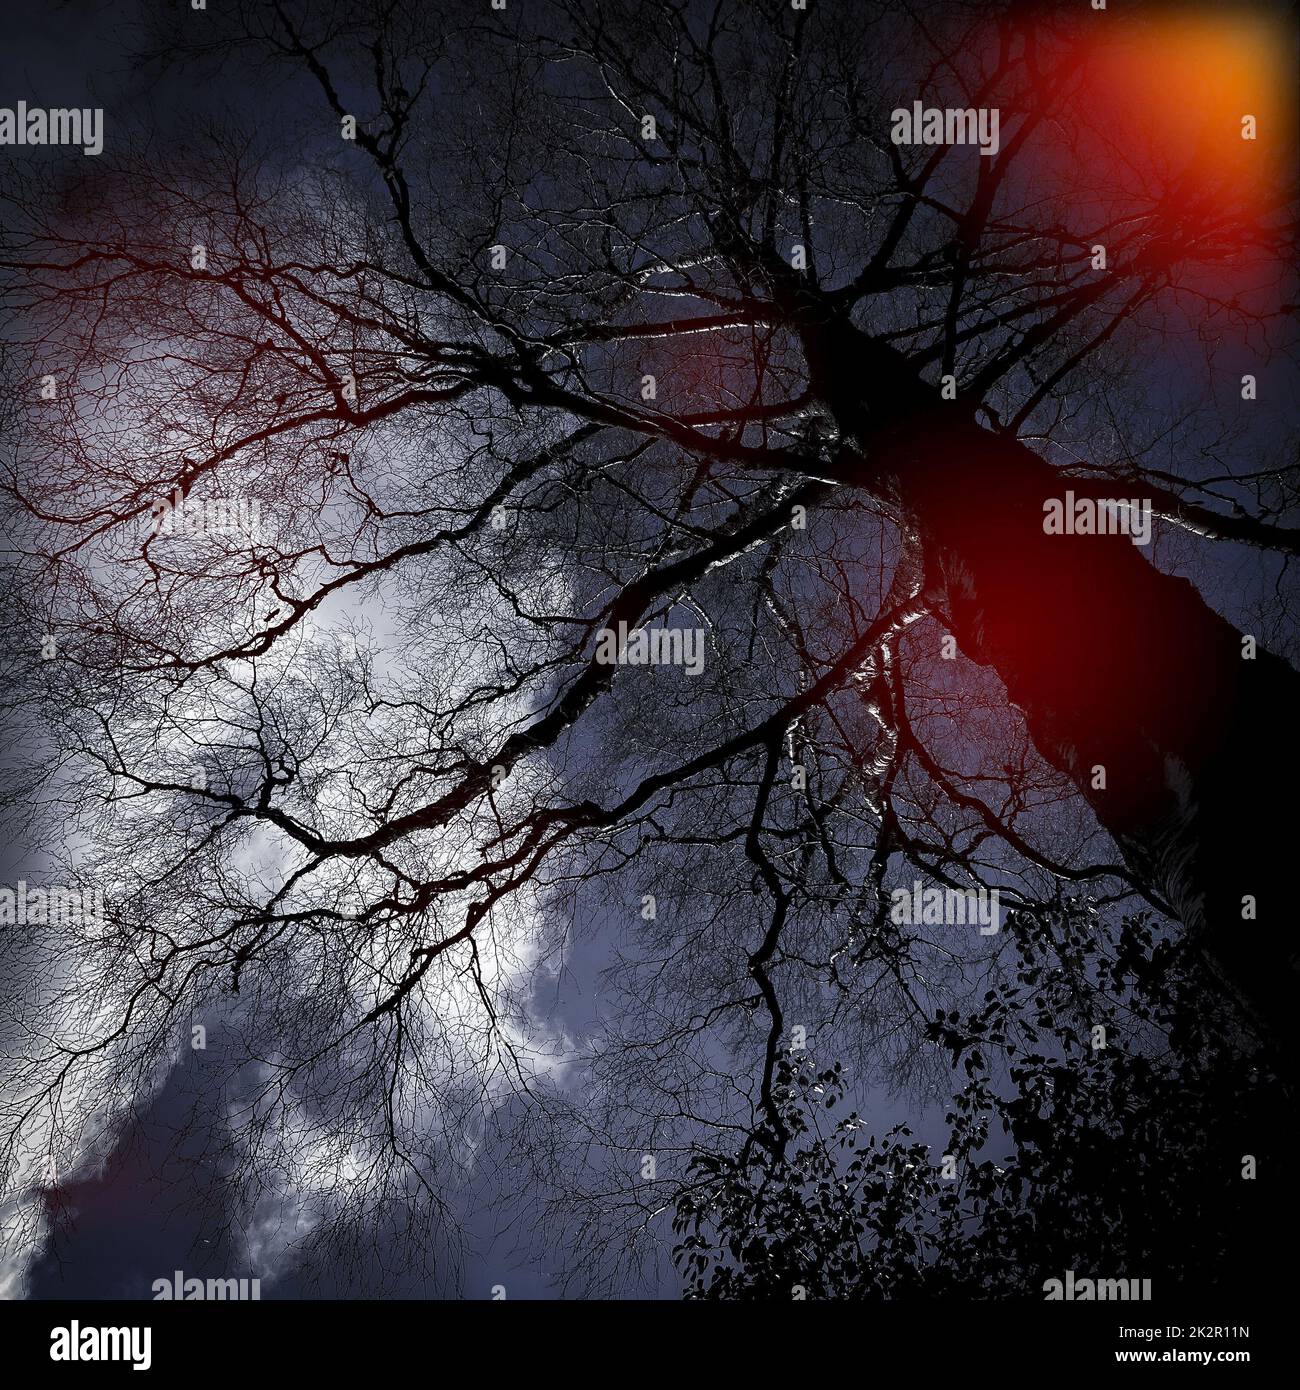 Immagini di alberi e cieli ispirate da Folk Horror. Foto Stock